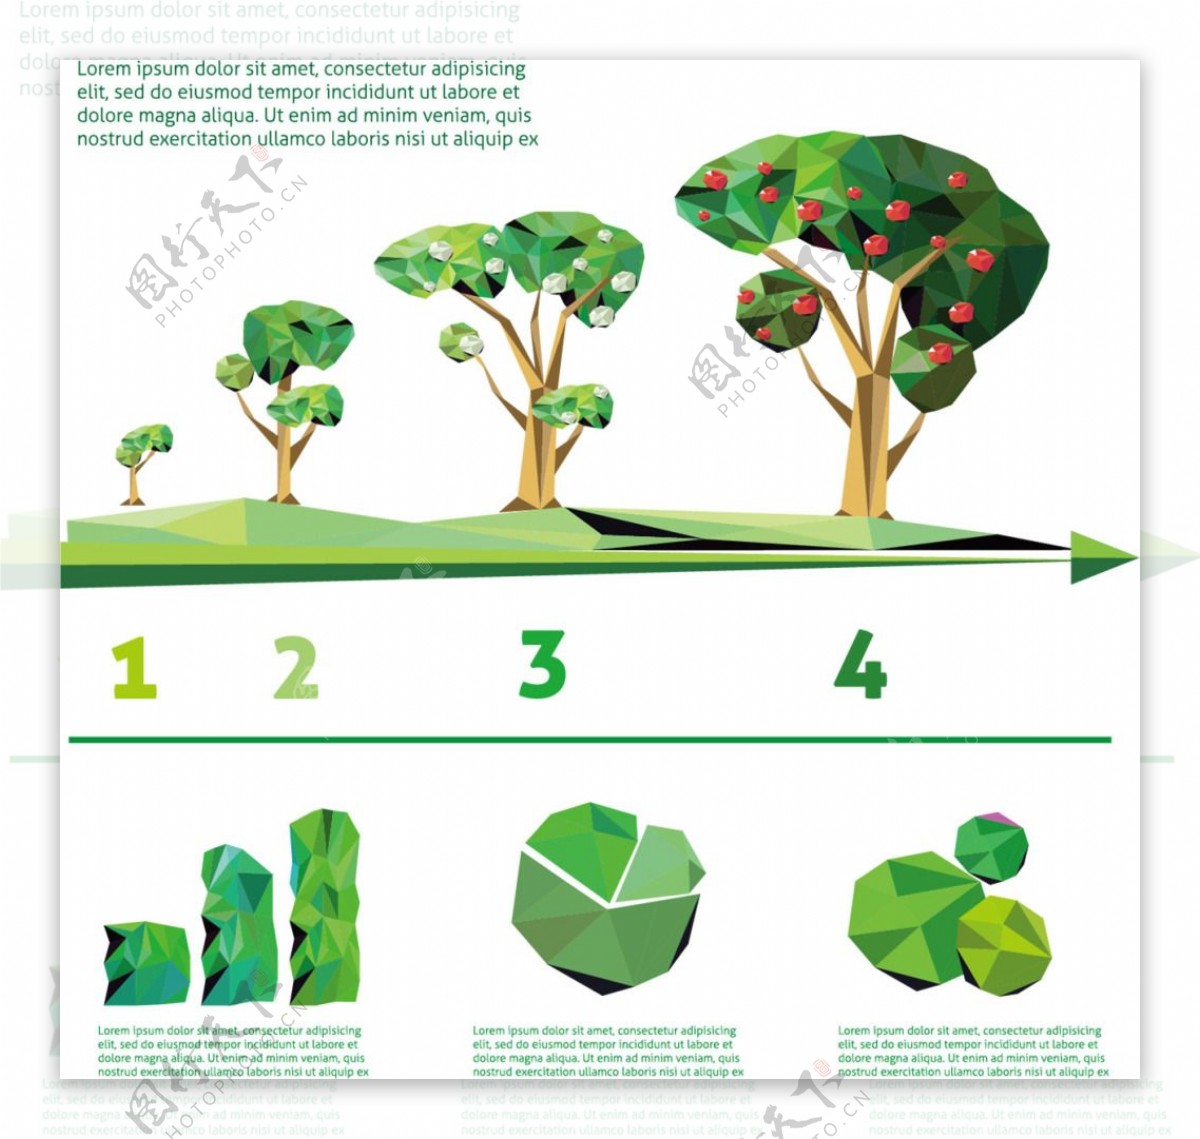 绿色绿化元素图案